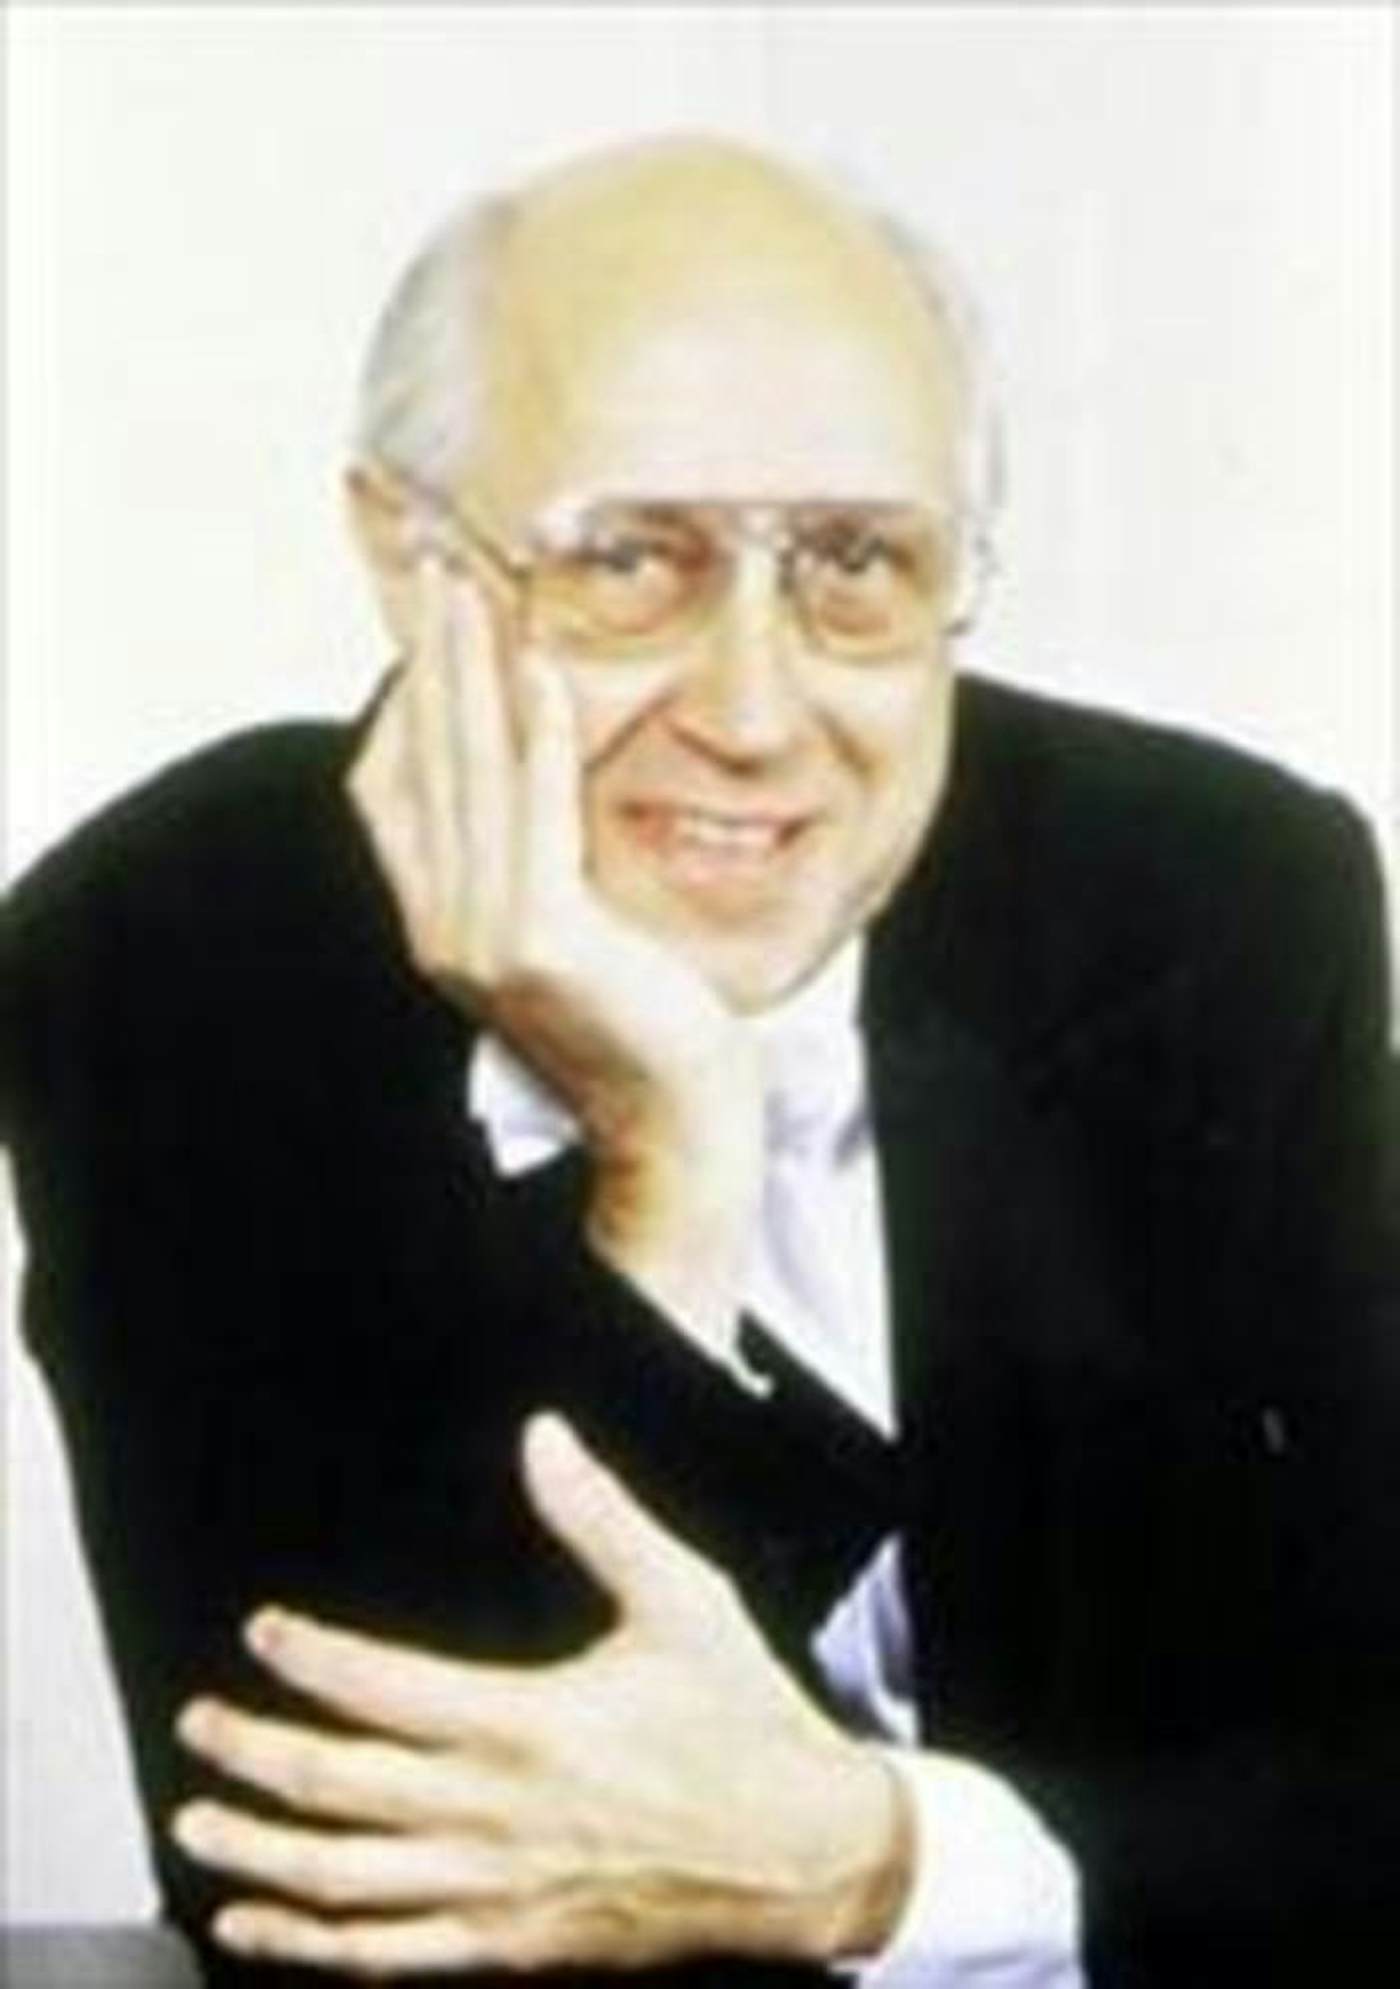 Mstislav Rostropovich